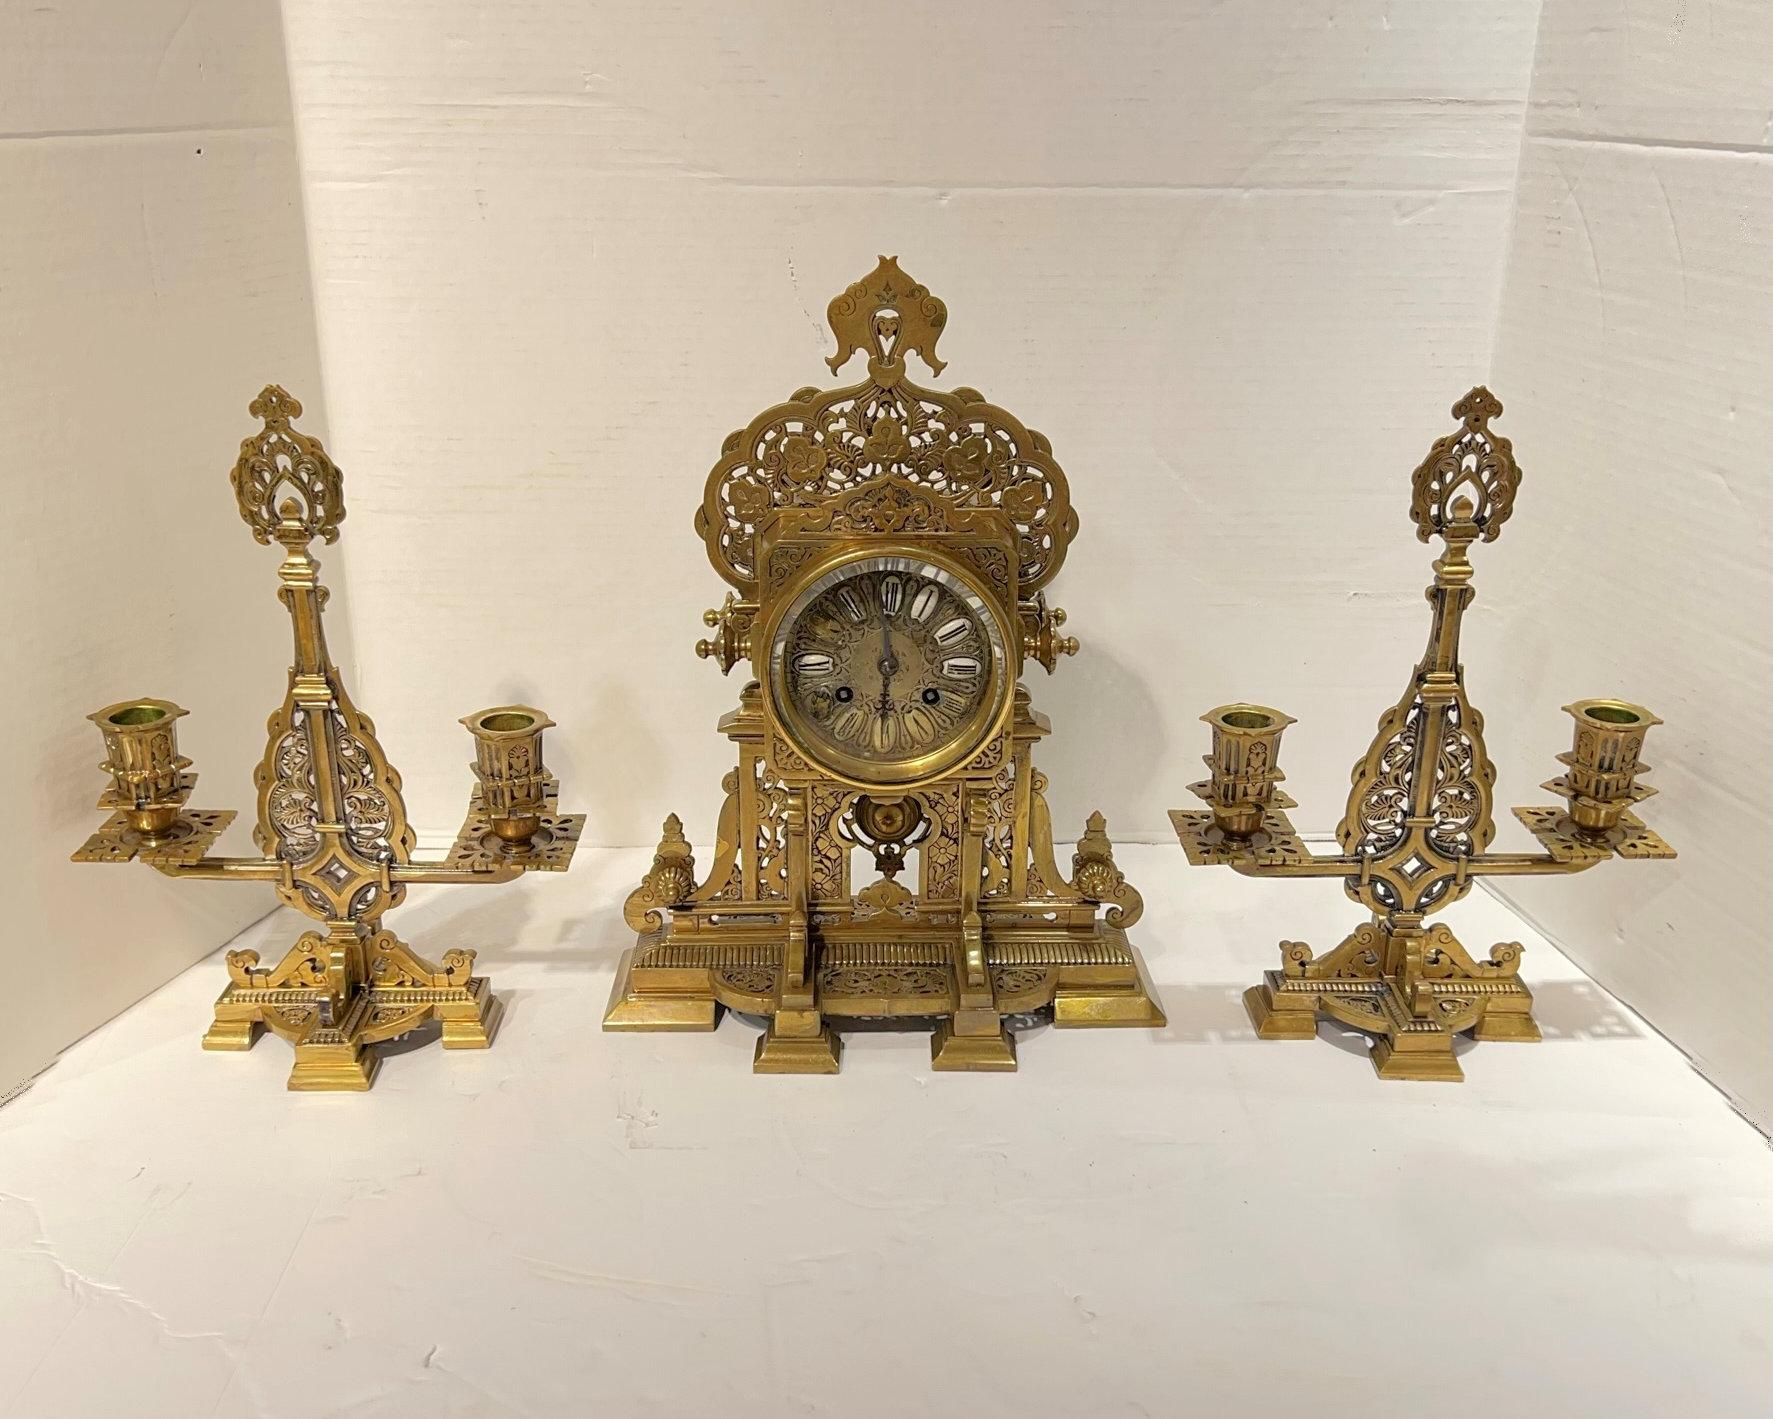 Horloge de cheminée française et chandelier garni de style islamique, vers les années 1880.  L'horloge mesure 13,5 x 10,5 x 6 pouces.